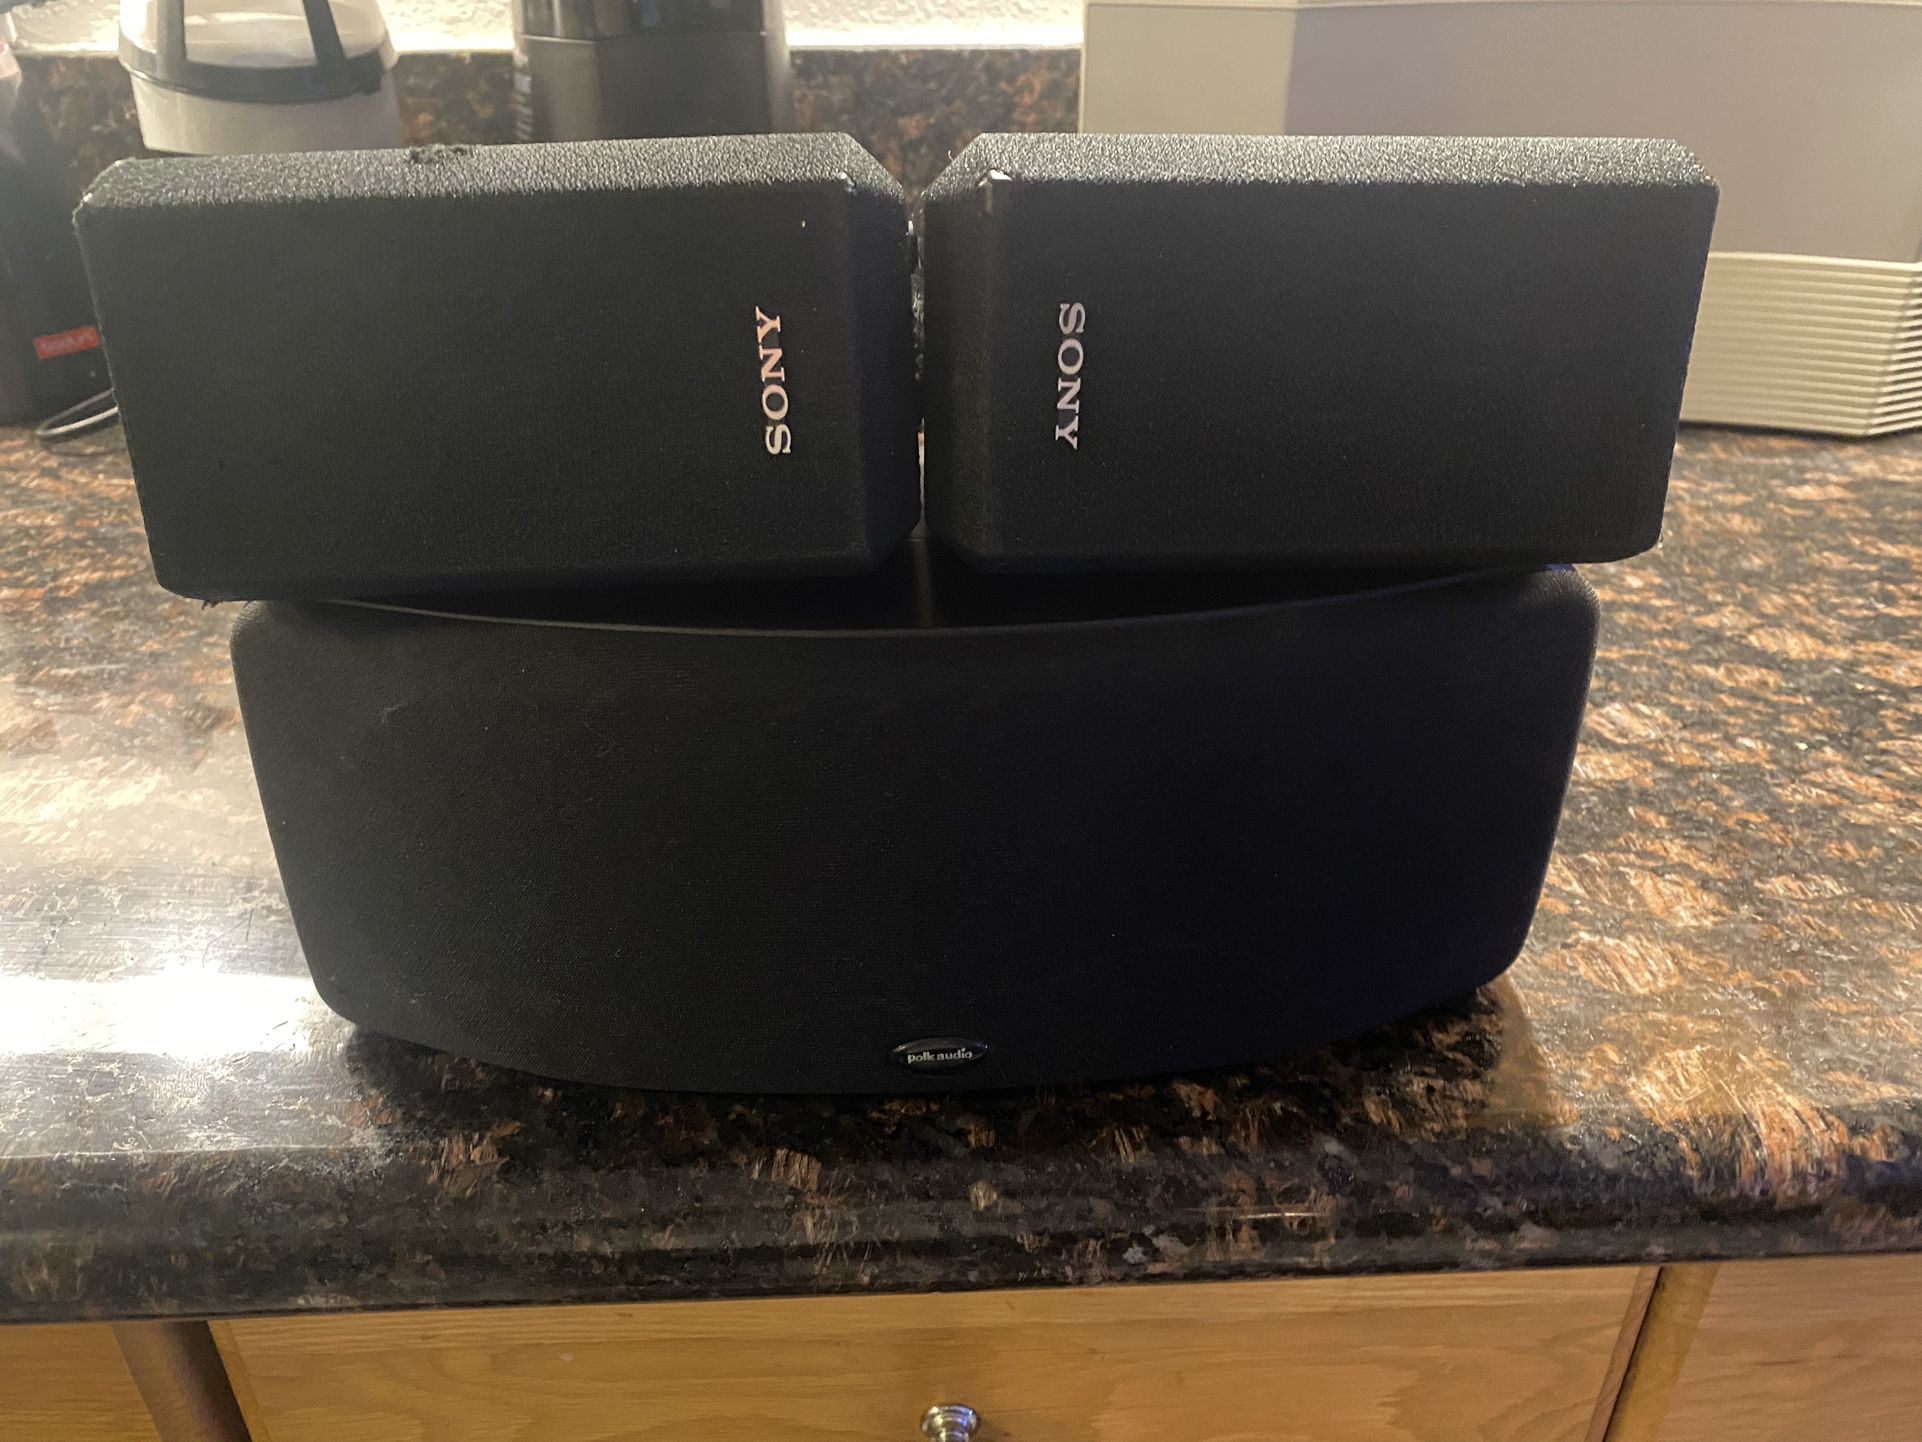 Polk Audio / Sony Speakers 